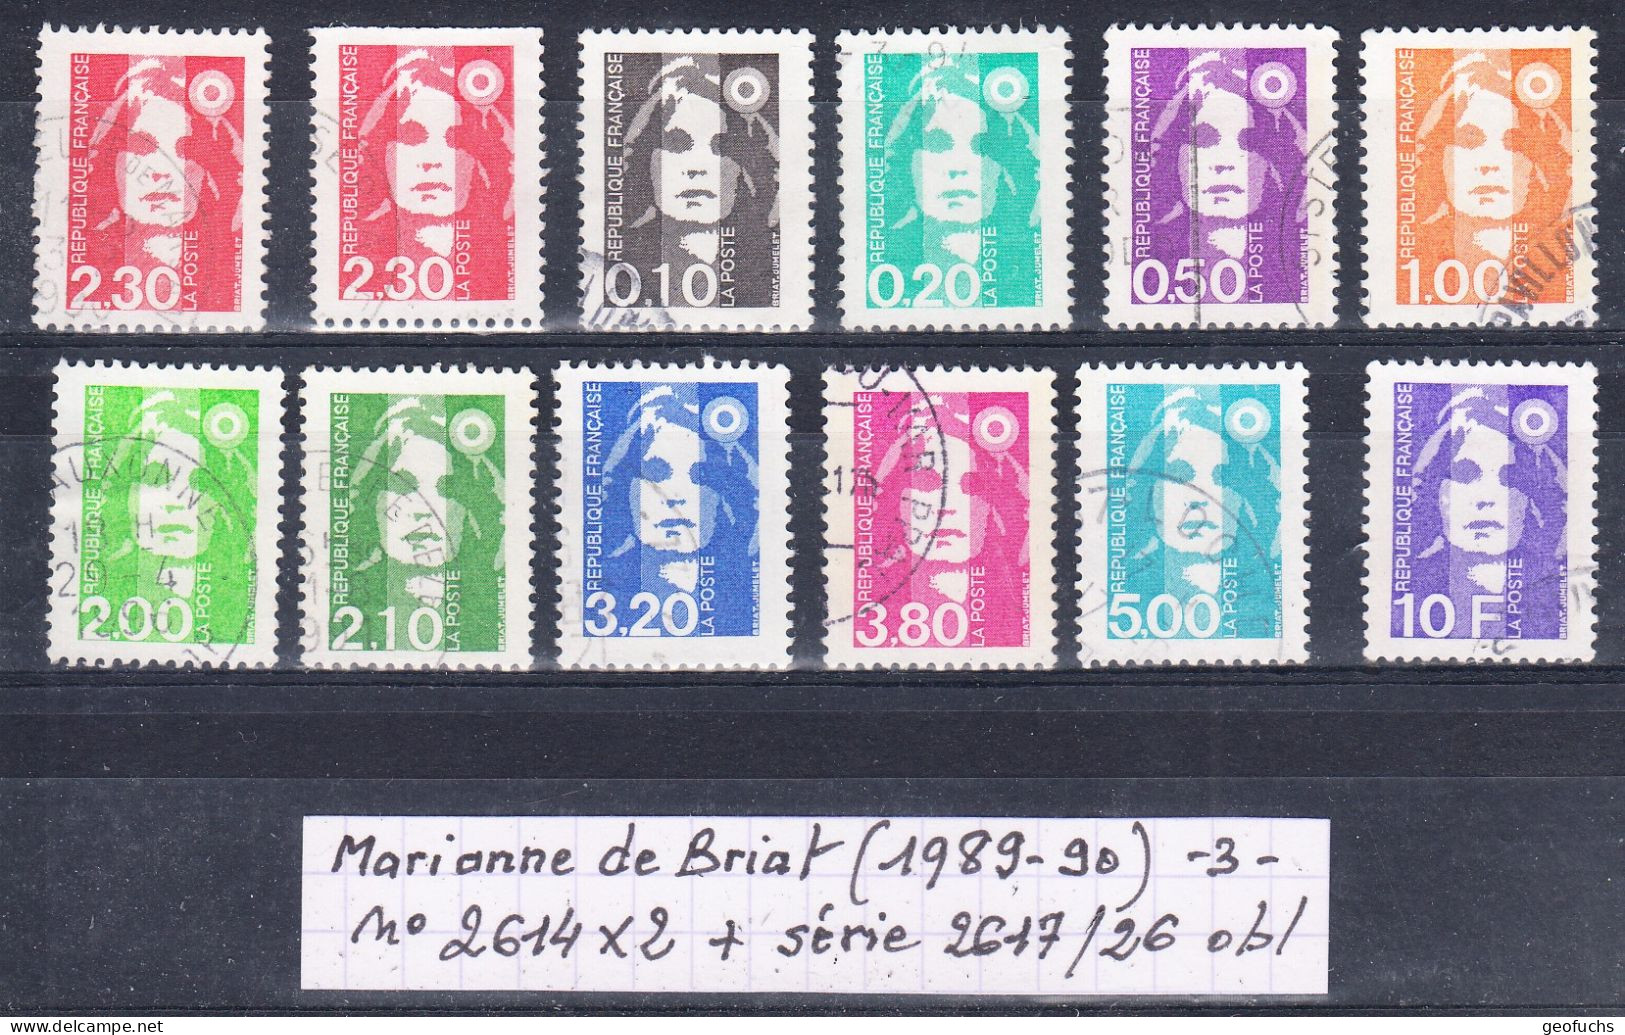 France M. De Briat (1989-90) Y/T N° 2614X2 +  + Série 2617/26 Oblitérés (lot 3) - 1989-1996 Maríanne Du Bicentenaire